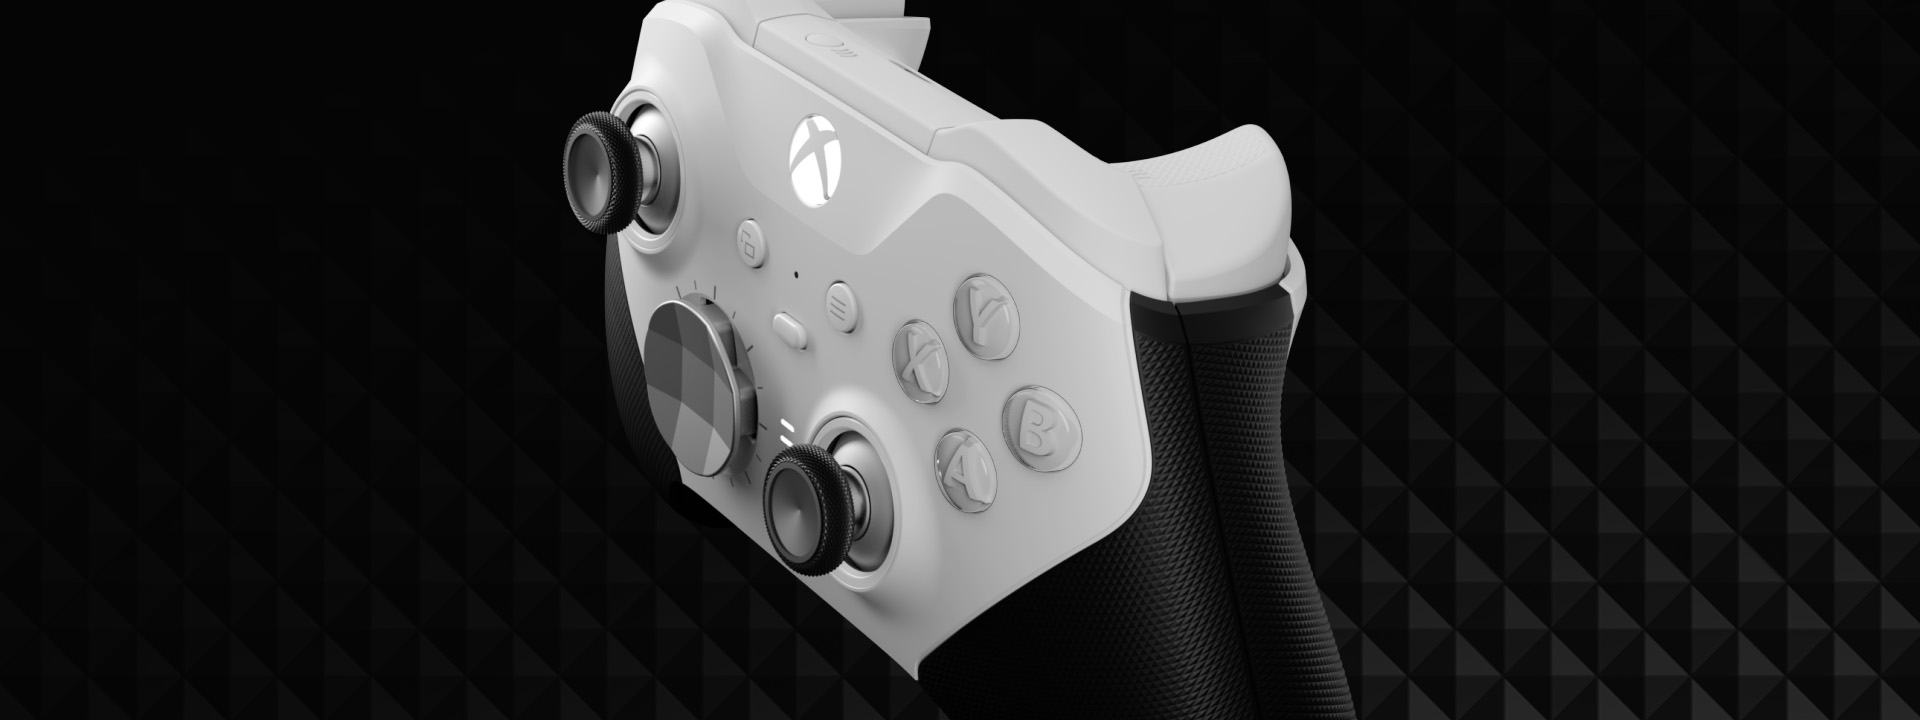 Xbox Elite Series 2 Core : cette manette premium abordable est moins chère  aujourd'hui